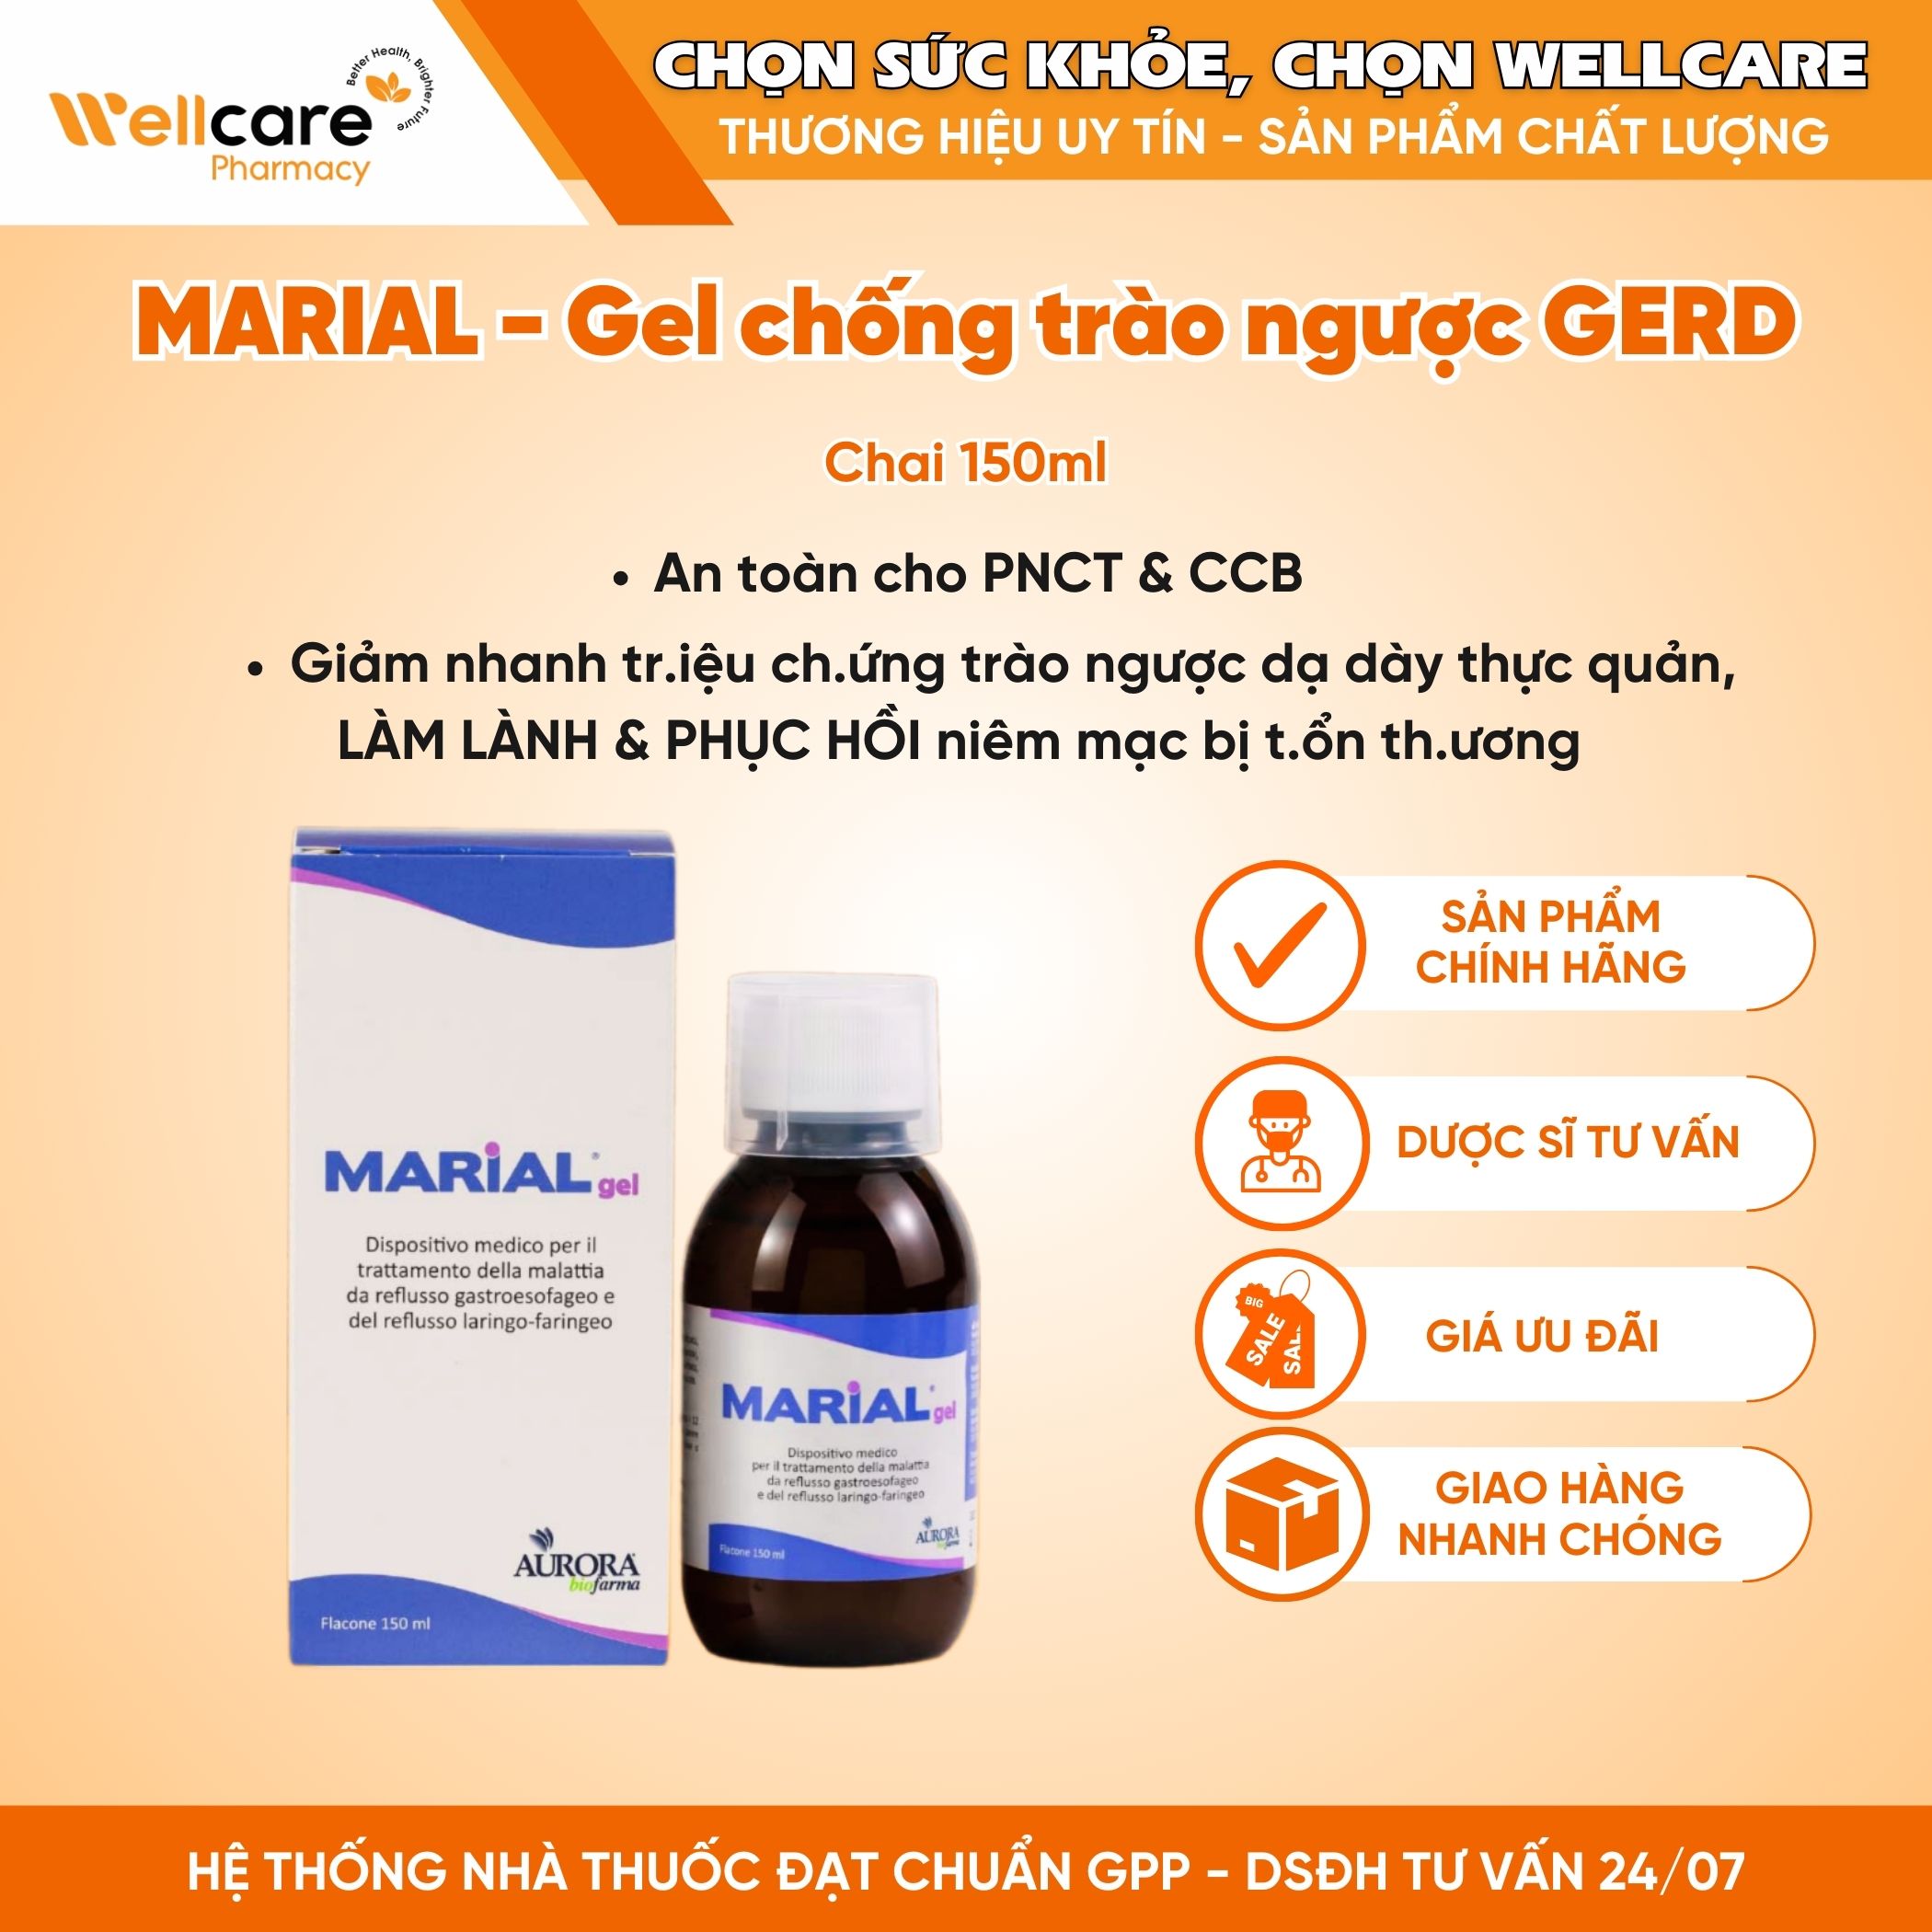 Marial Gel – Chống trào ngược dạ dày thực quản, bảo vệ, tái tạo và phục hồi niêm mạc họng (150ml)